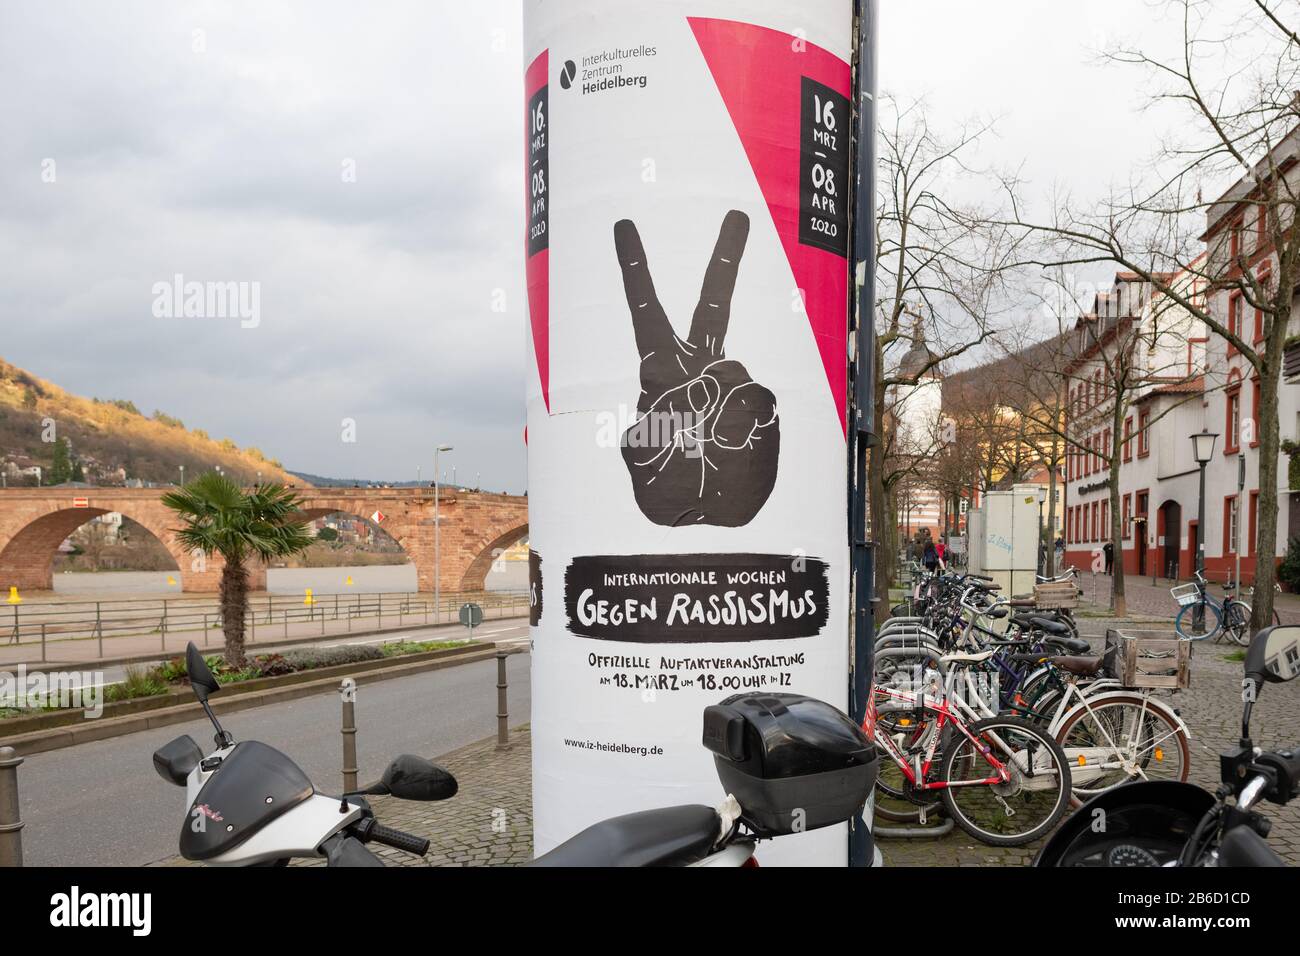 International Weeks Against Racism 2020 advertising poster, Heidelberg, Germany Stock Photo